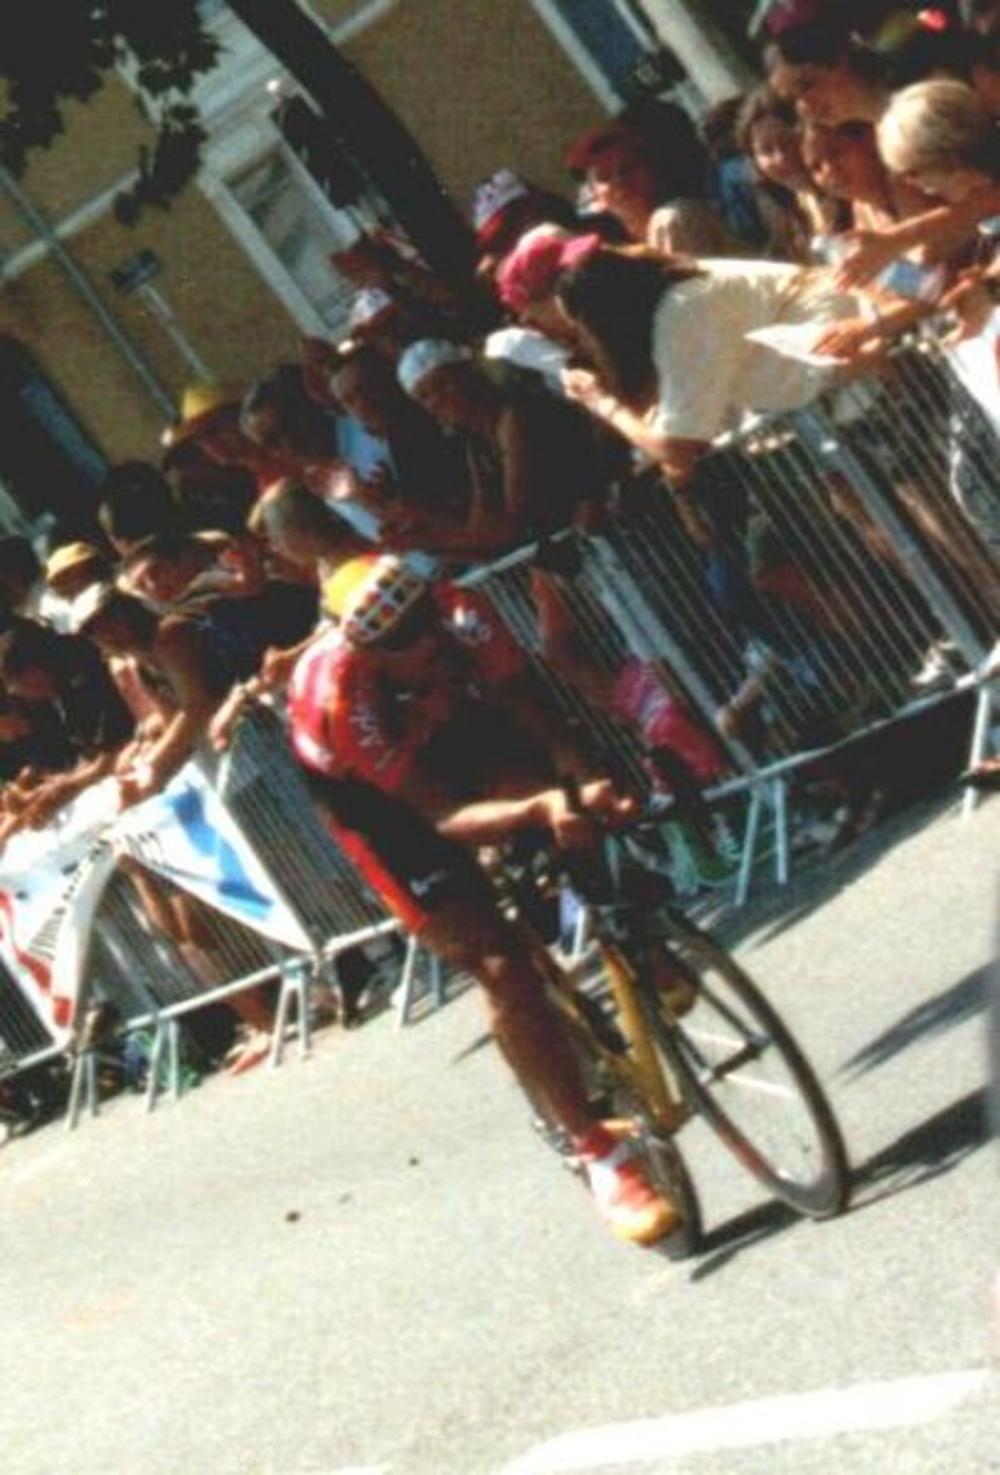 Tour de France 2000